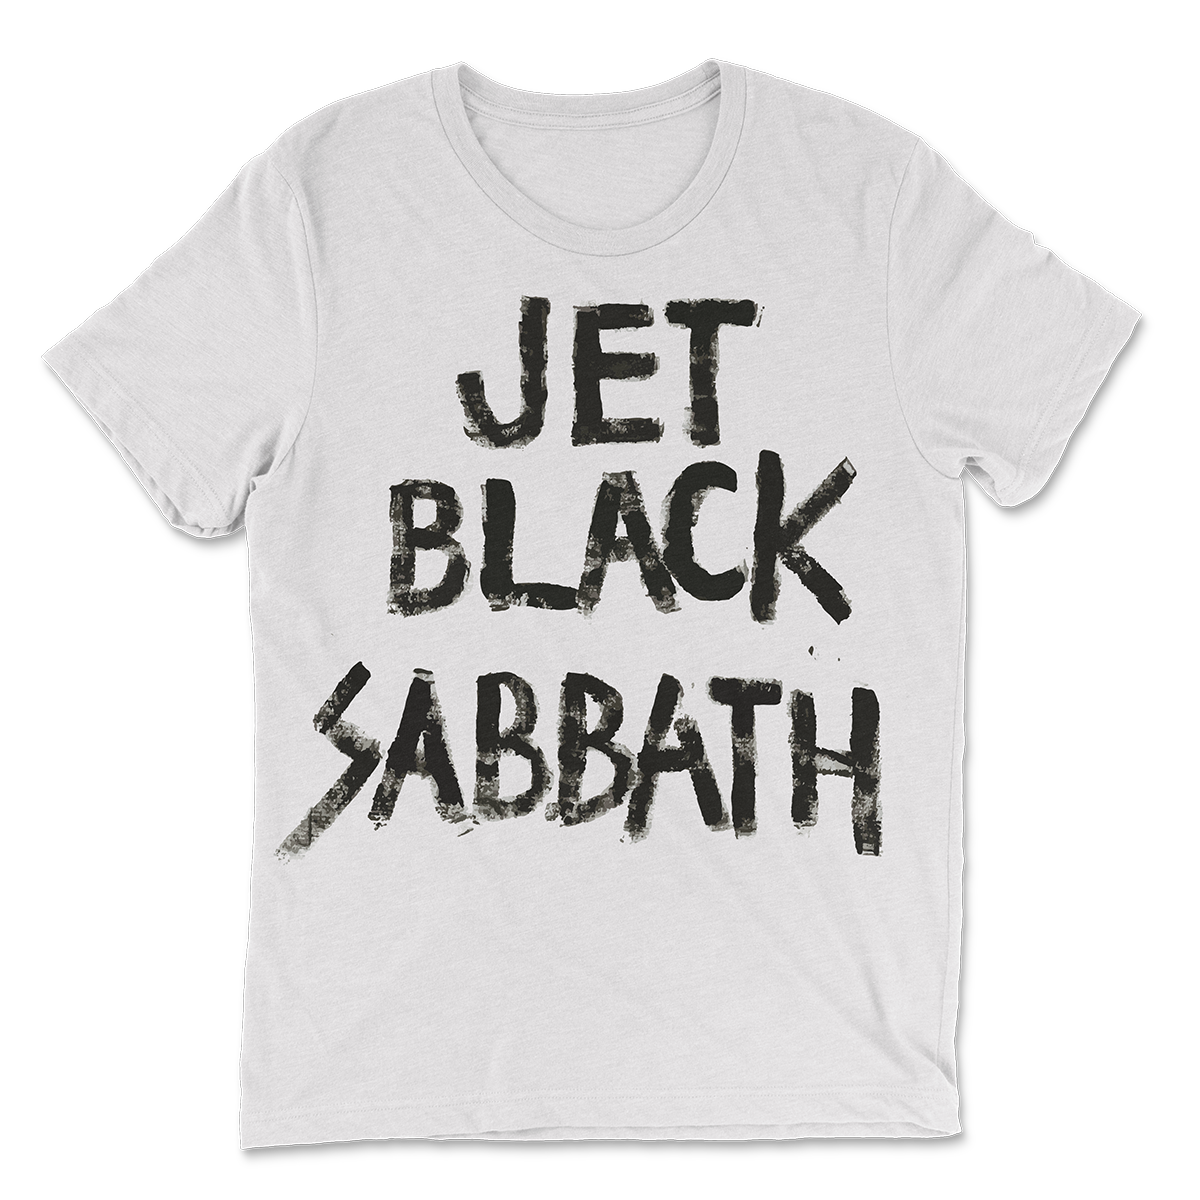 Jet Black Sabbath Unisex T-shirt in White - Wild Ones